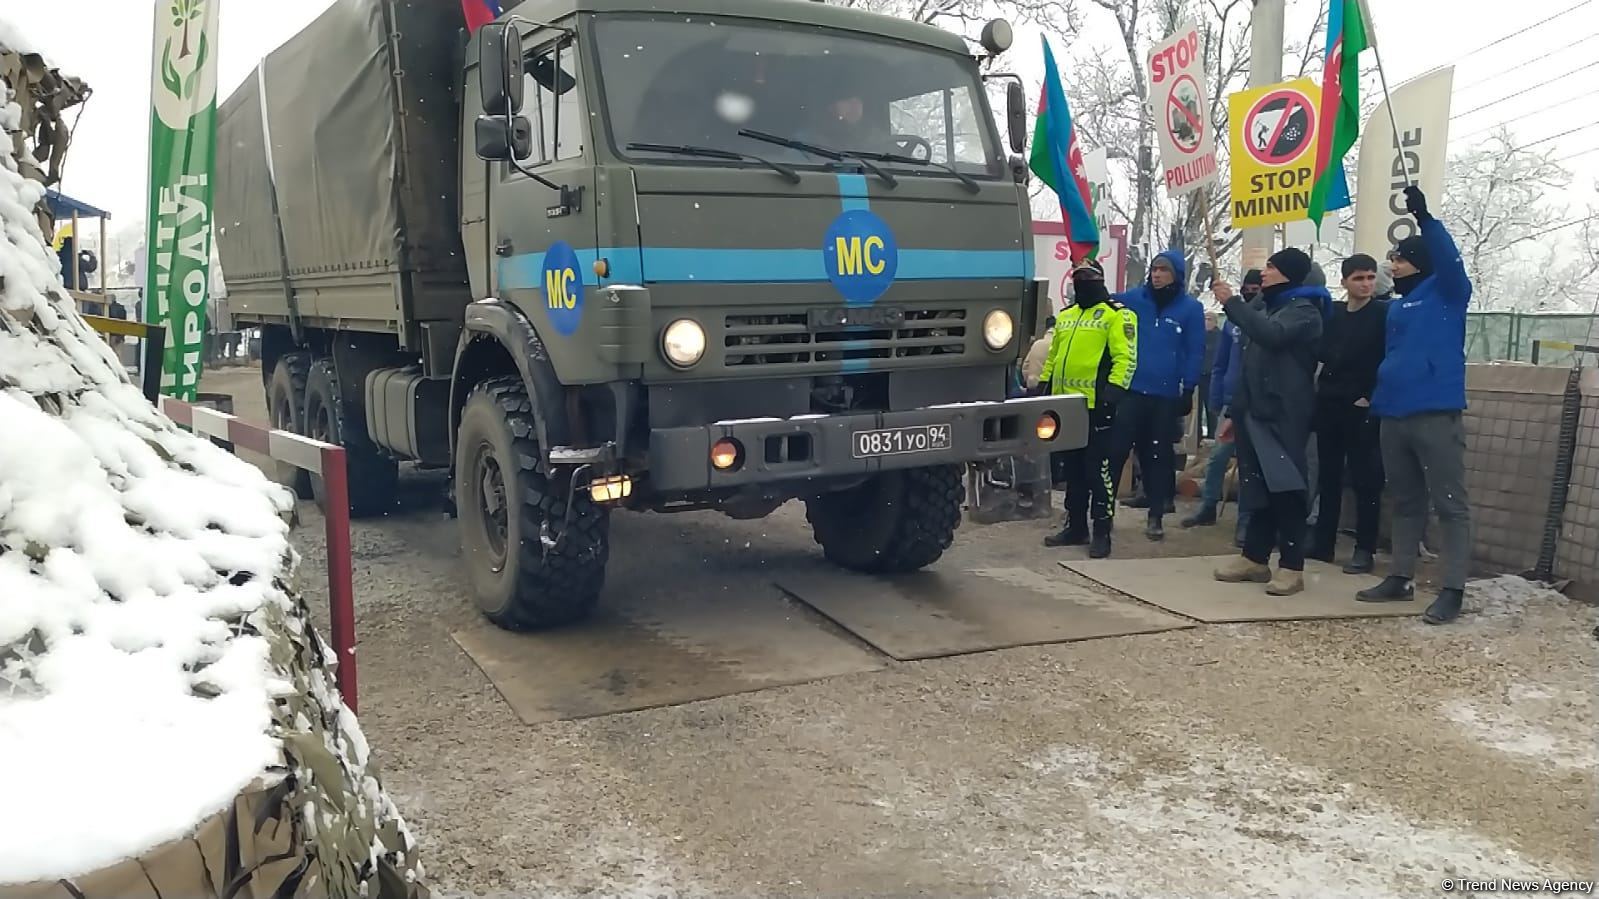 По Лачинской дороге беспрепятственно проехали 20 грузовых машин РМК (ФОТО)